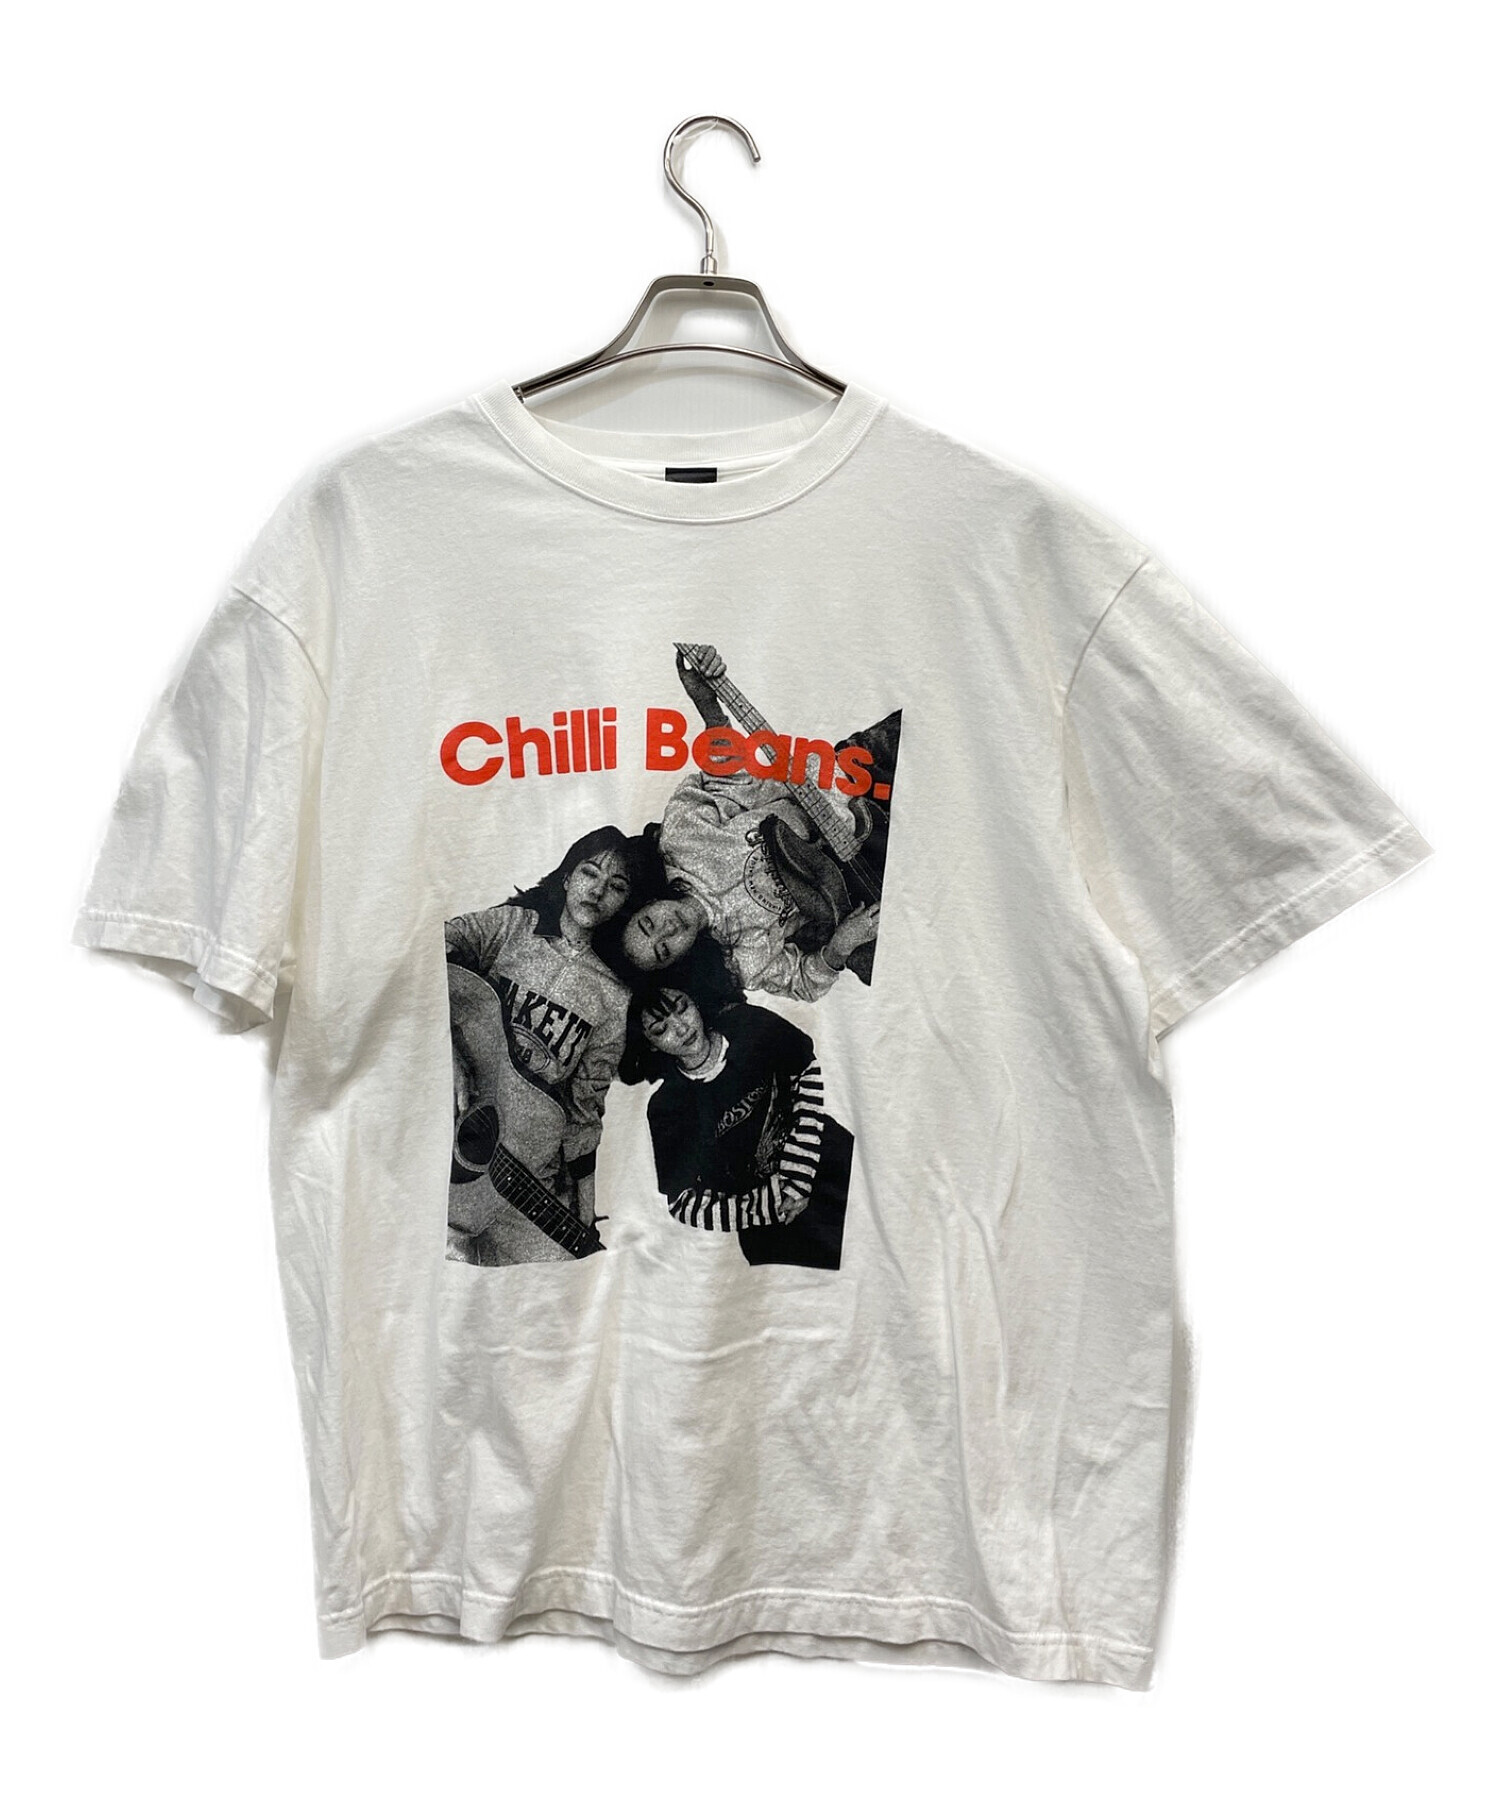 Chilli Beans. (チリビーンズ) 半袖カットソー ホワイト×ブラック サイズ:XL 1155円